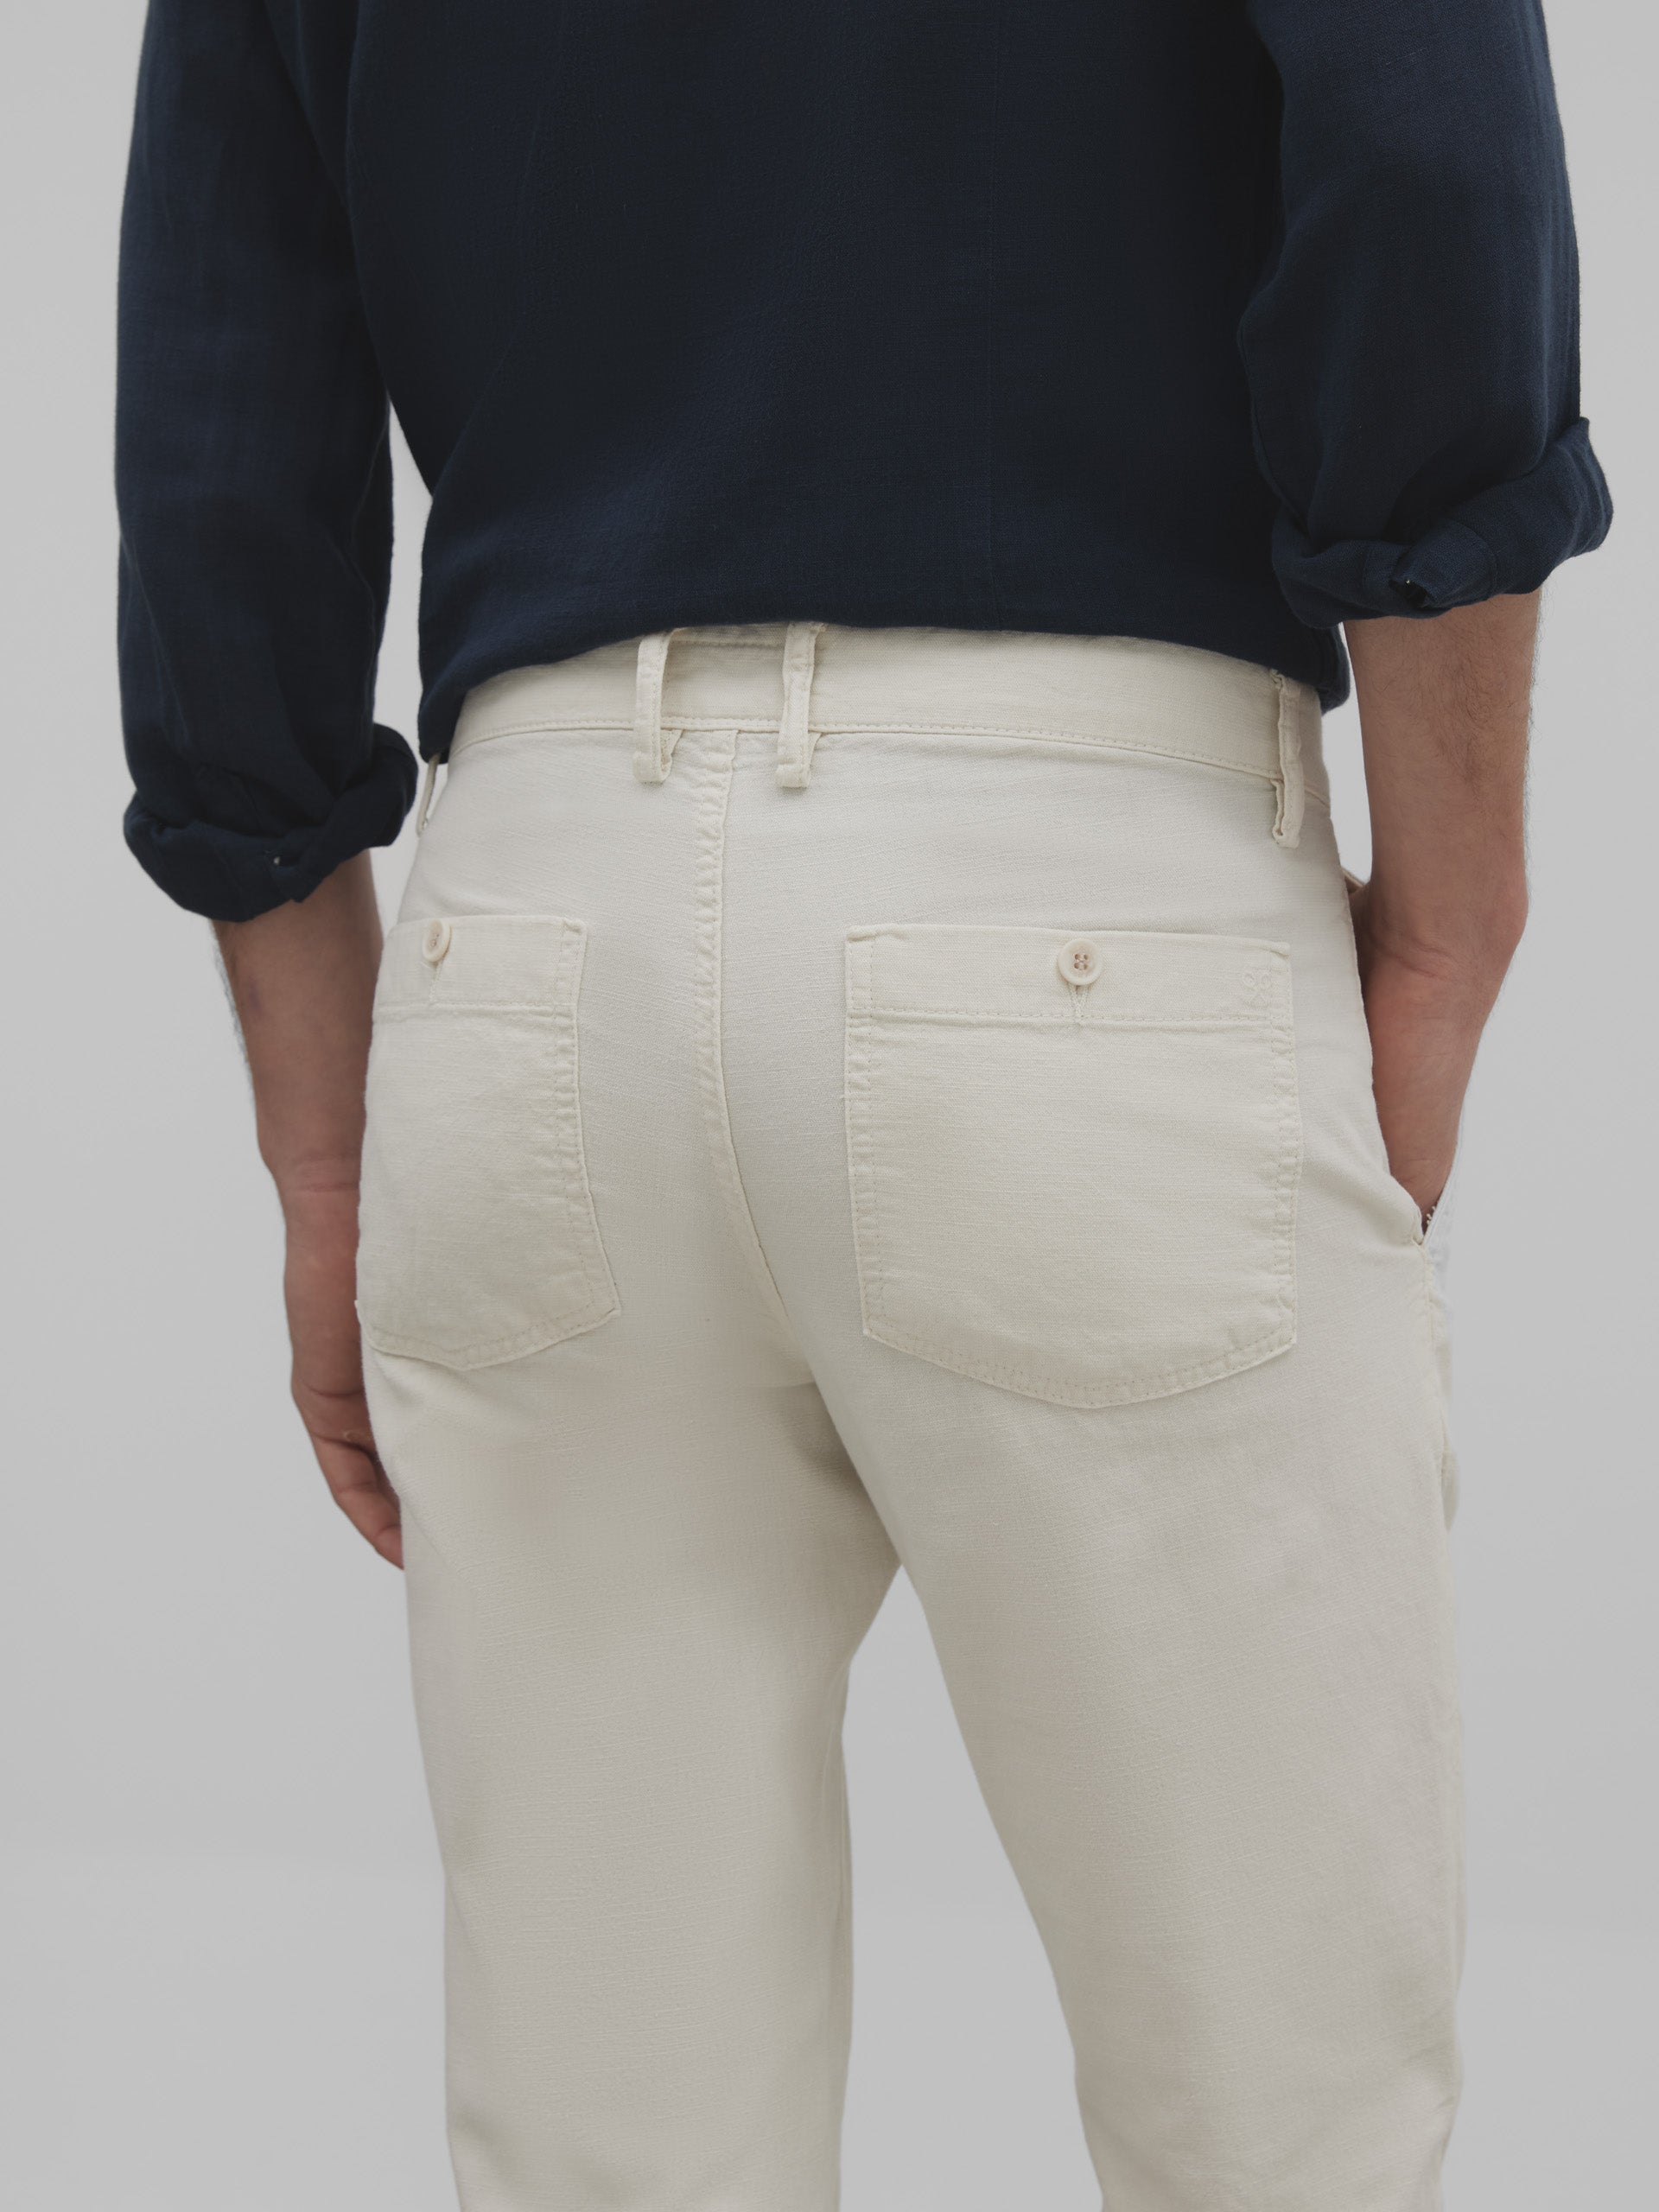 Pantalon sport chino en lin beige clair